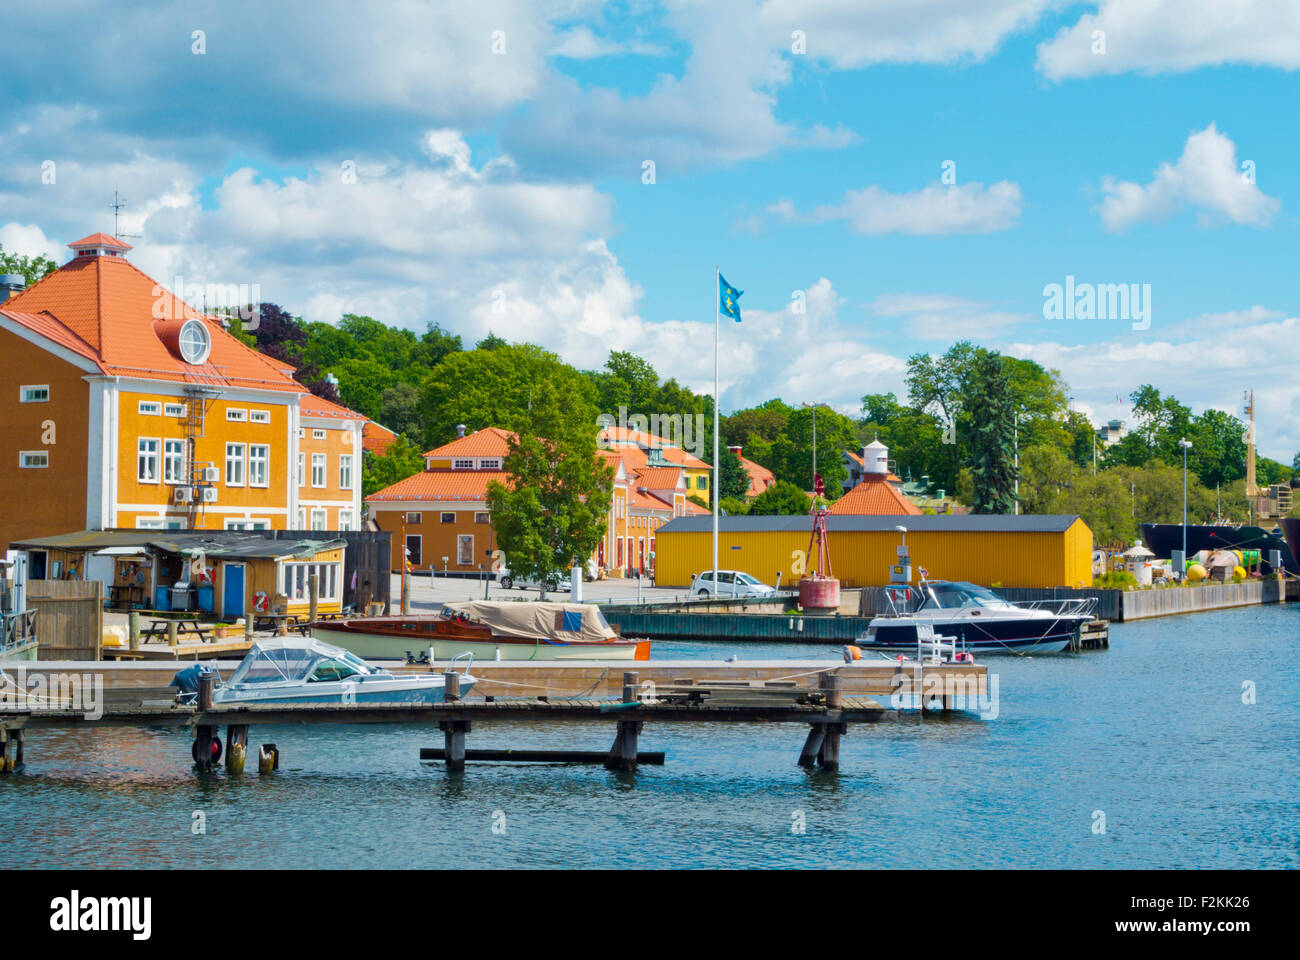 Harbour area, on shores of Waldemarsviken, Djurgården island, Stockholm, Sweden Stock Photo